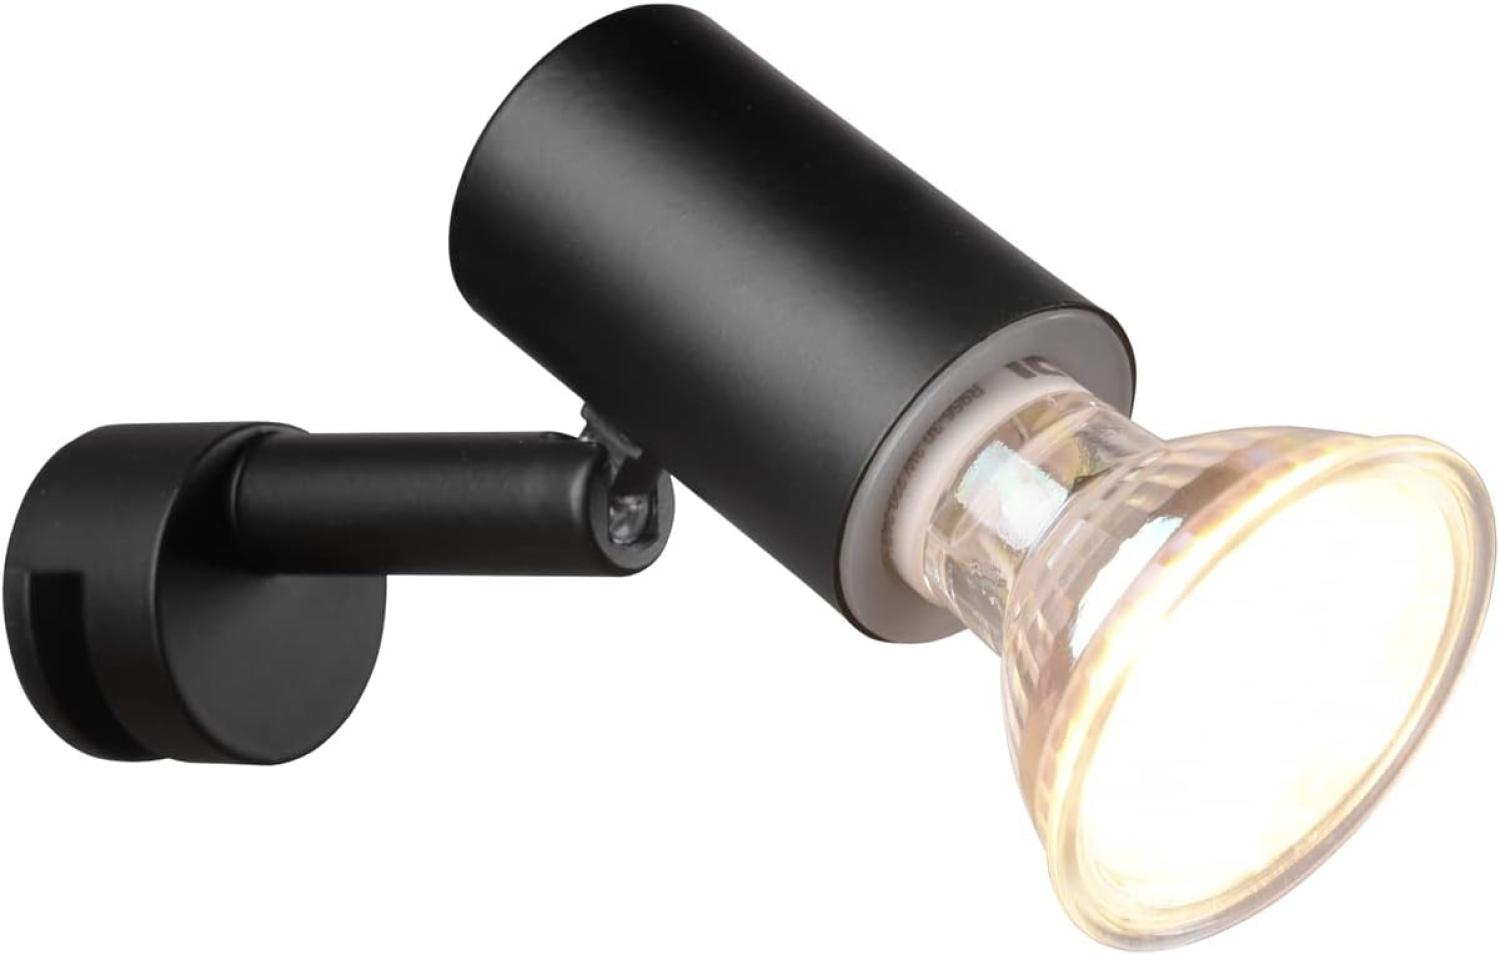 LED Badezimmerlampe dimmbar Schwarz, Spiegelklemmleuchte mit schwenkbarem Spot Bild 1